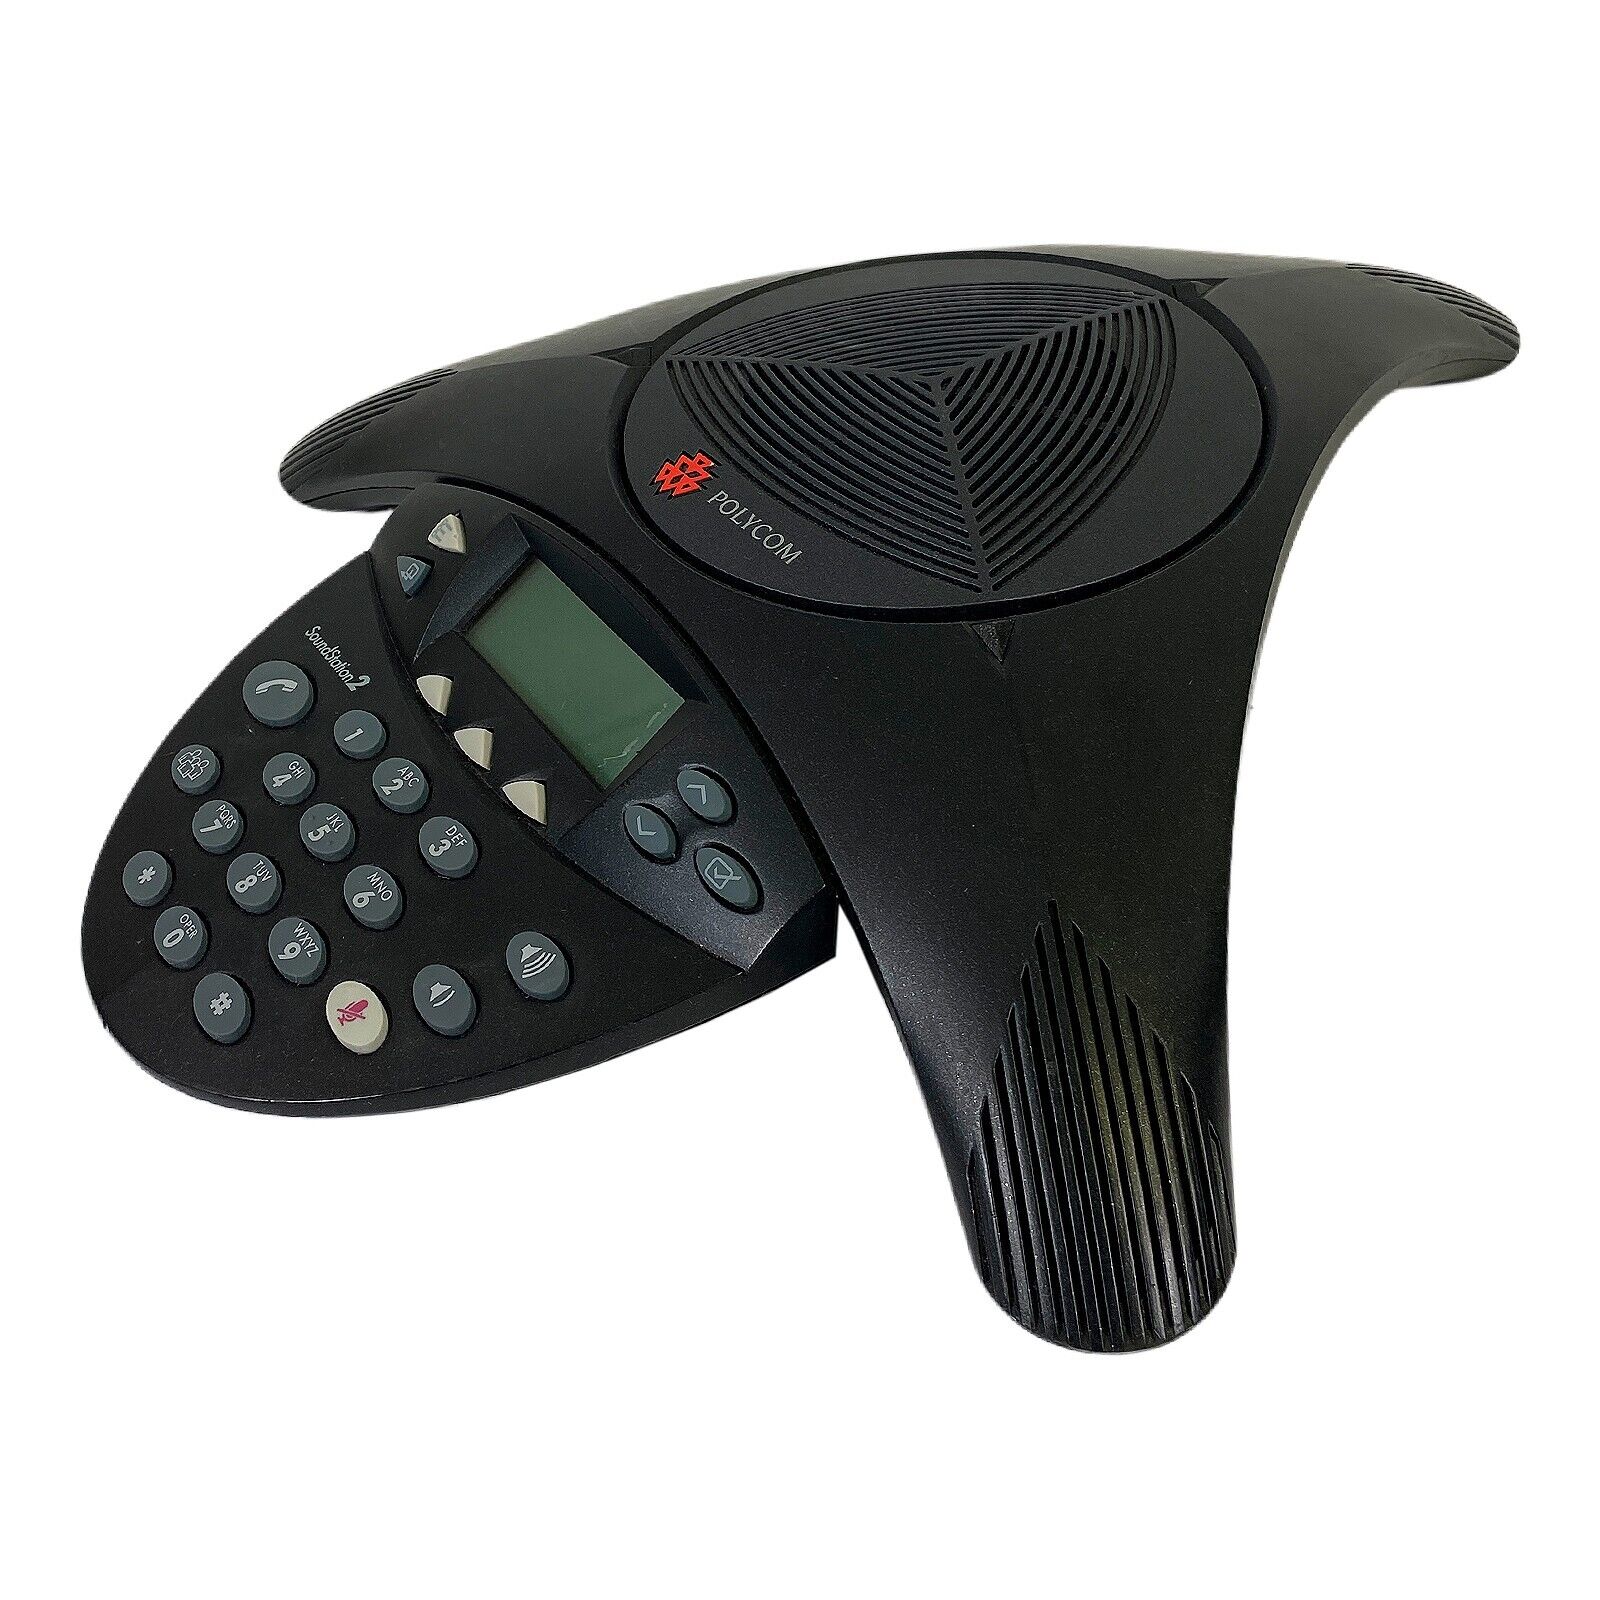 Polycom SoundStation 2 2201-16200-601 Conference Phone System